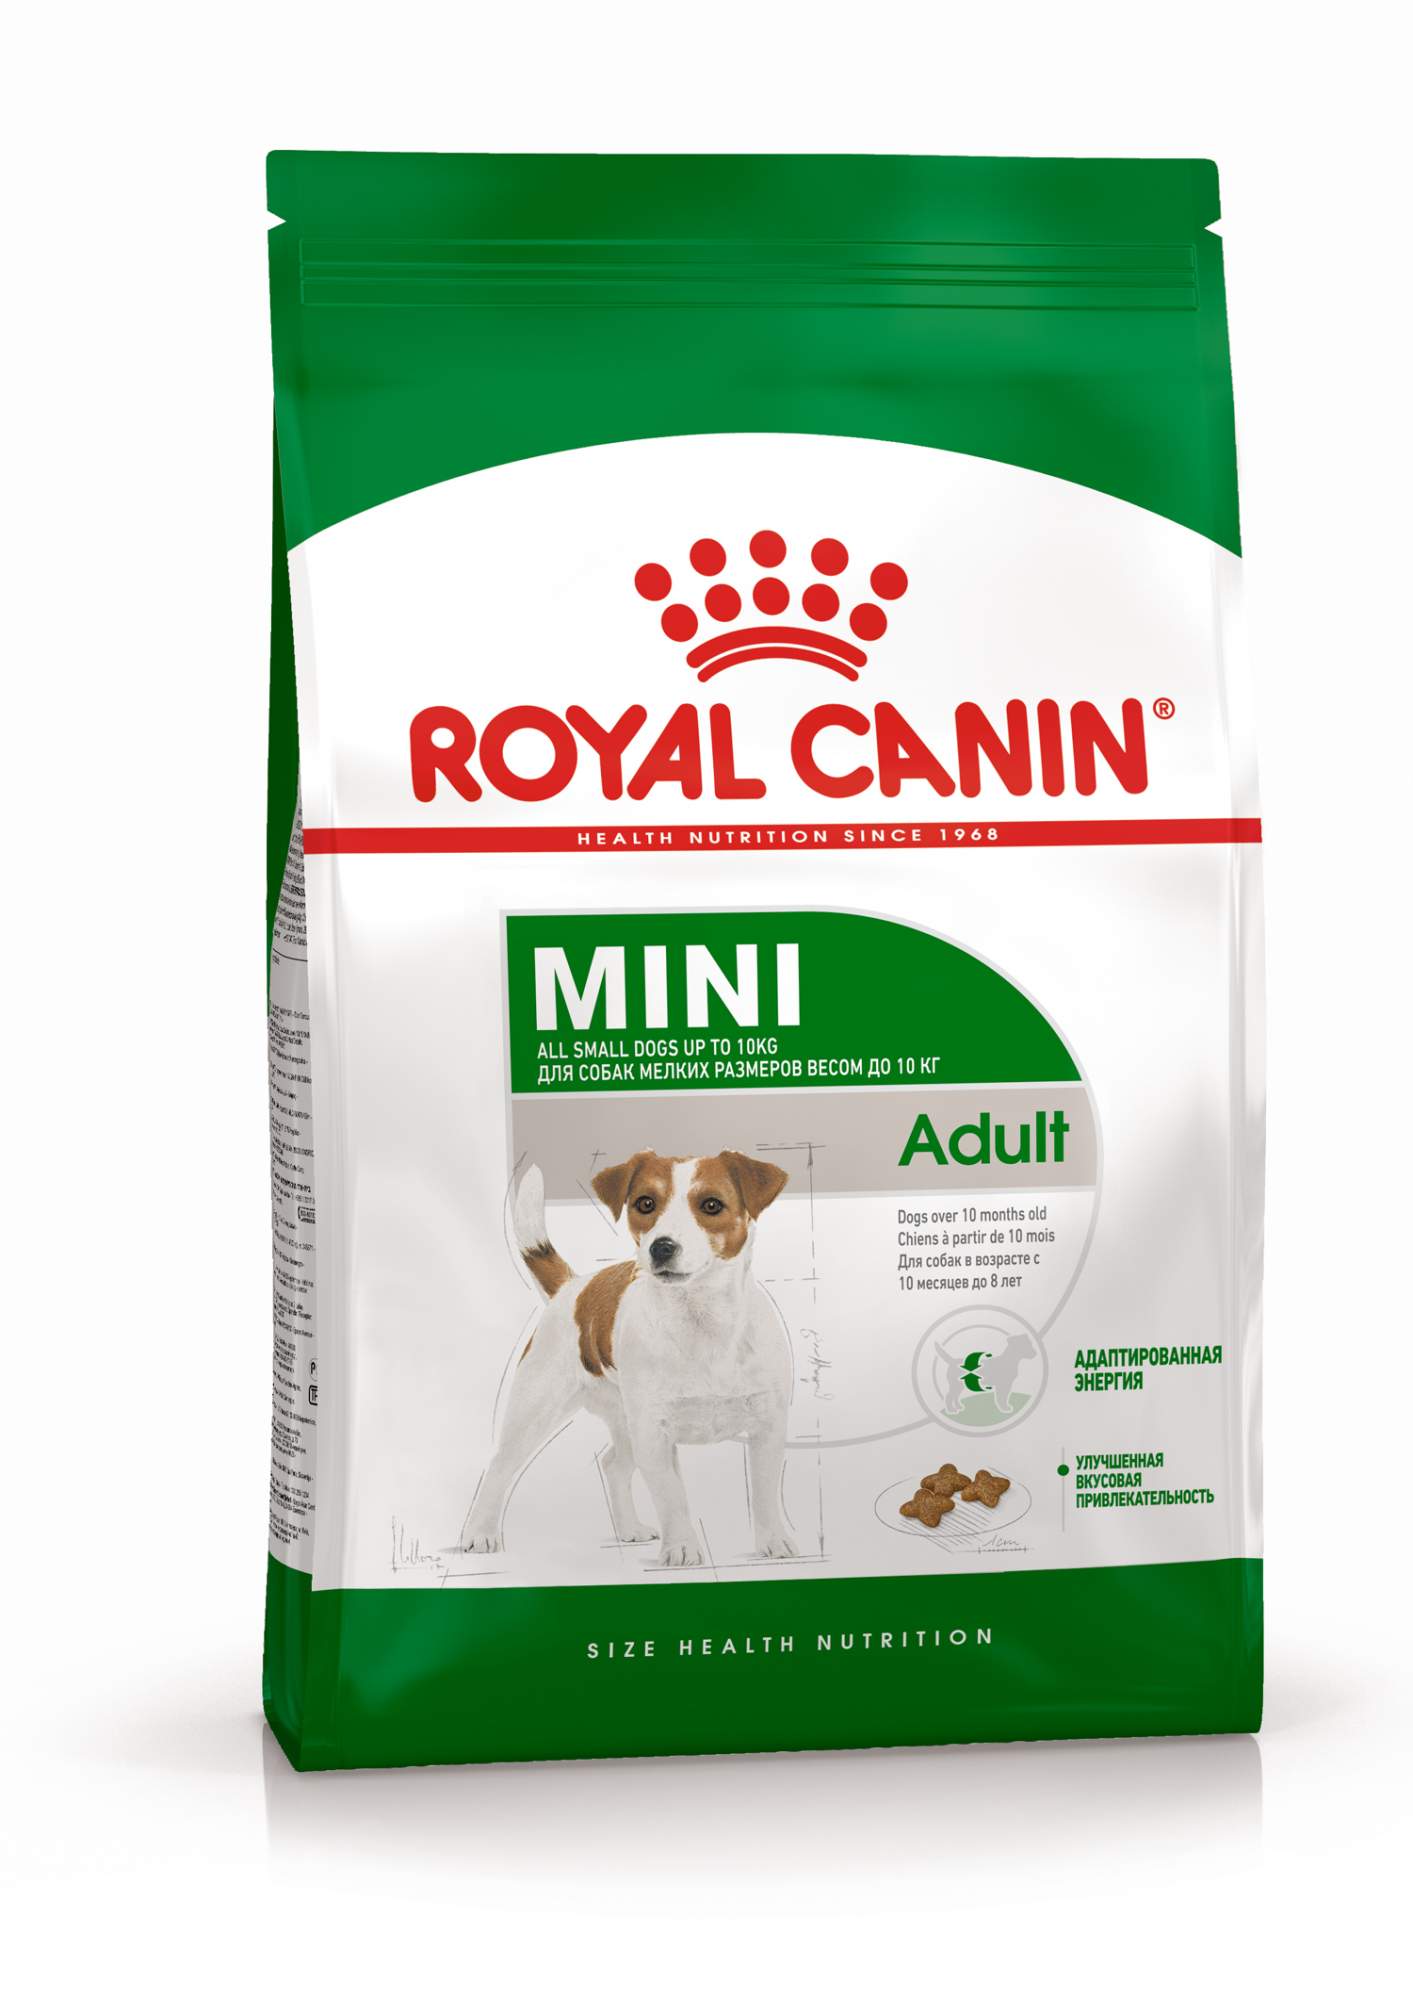 Сухой корм для собак Royal Canin Mini Adult, для малых пород 8 кг - купить в Lubimchik, цена на Мегамаркет